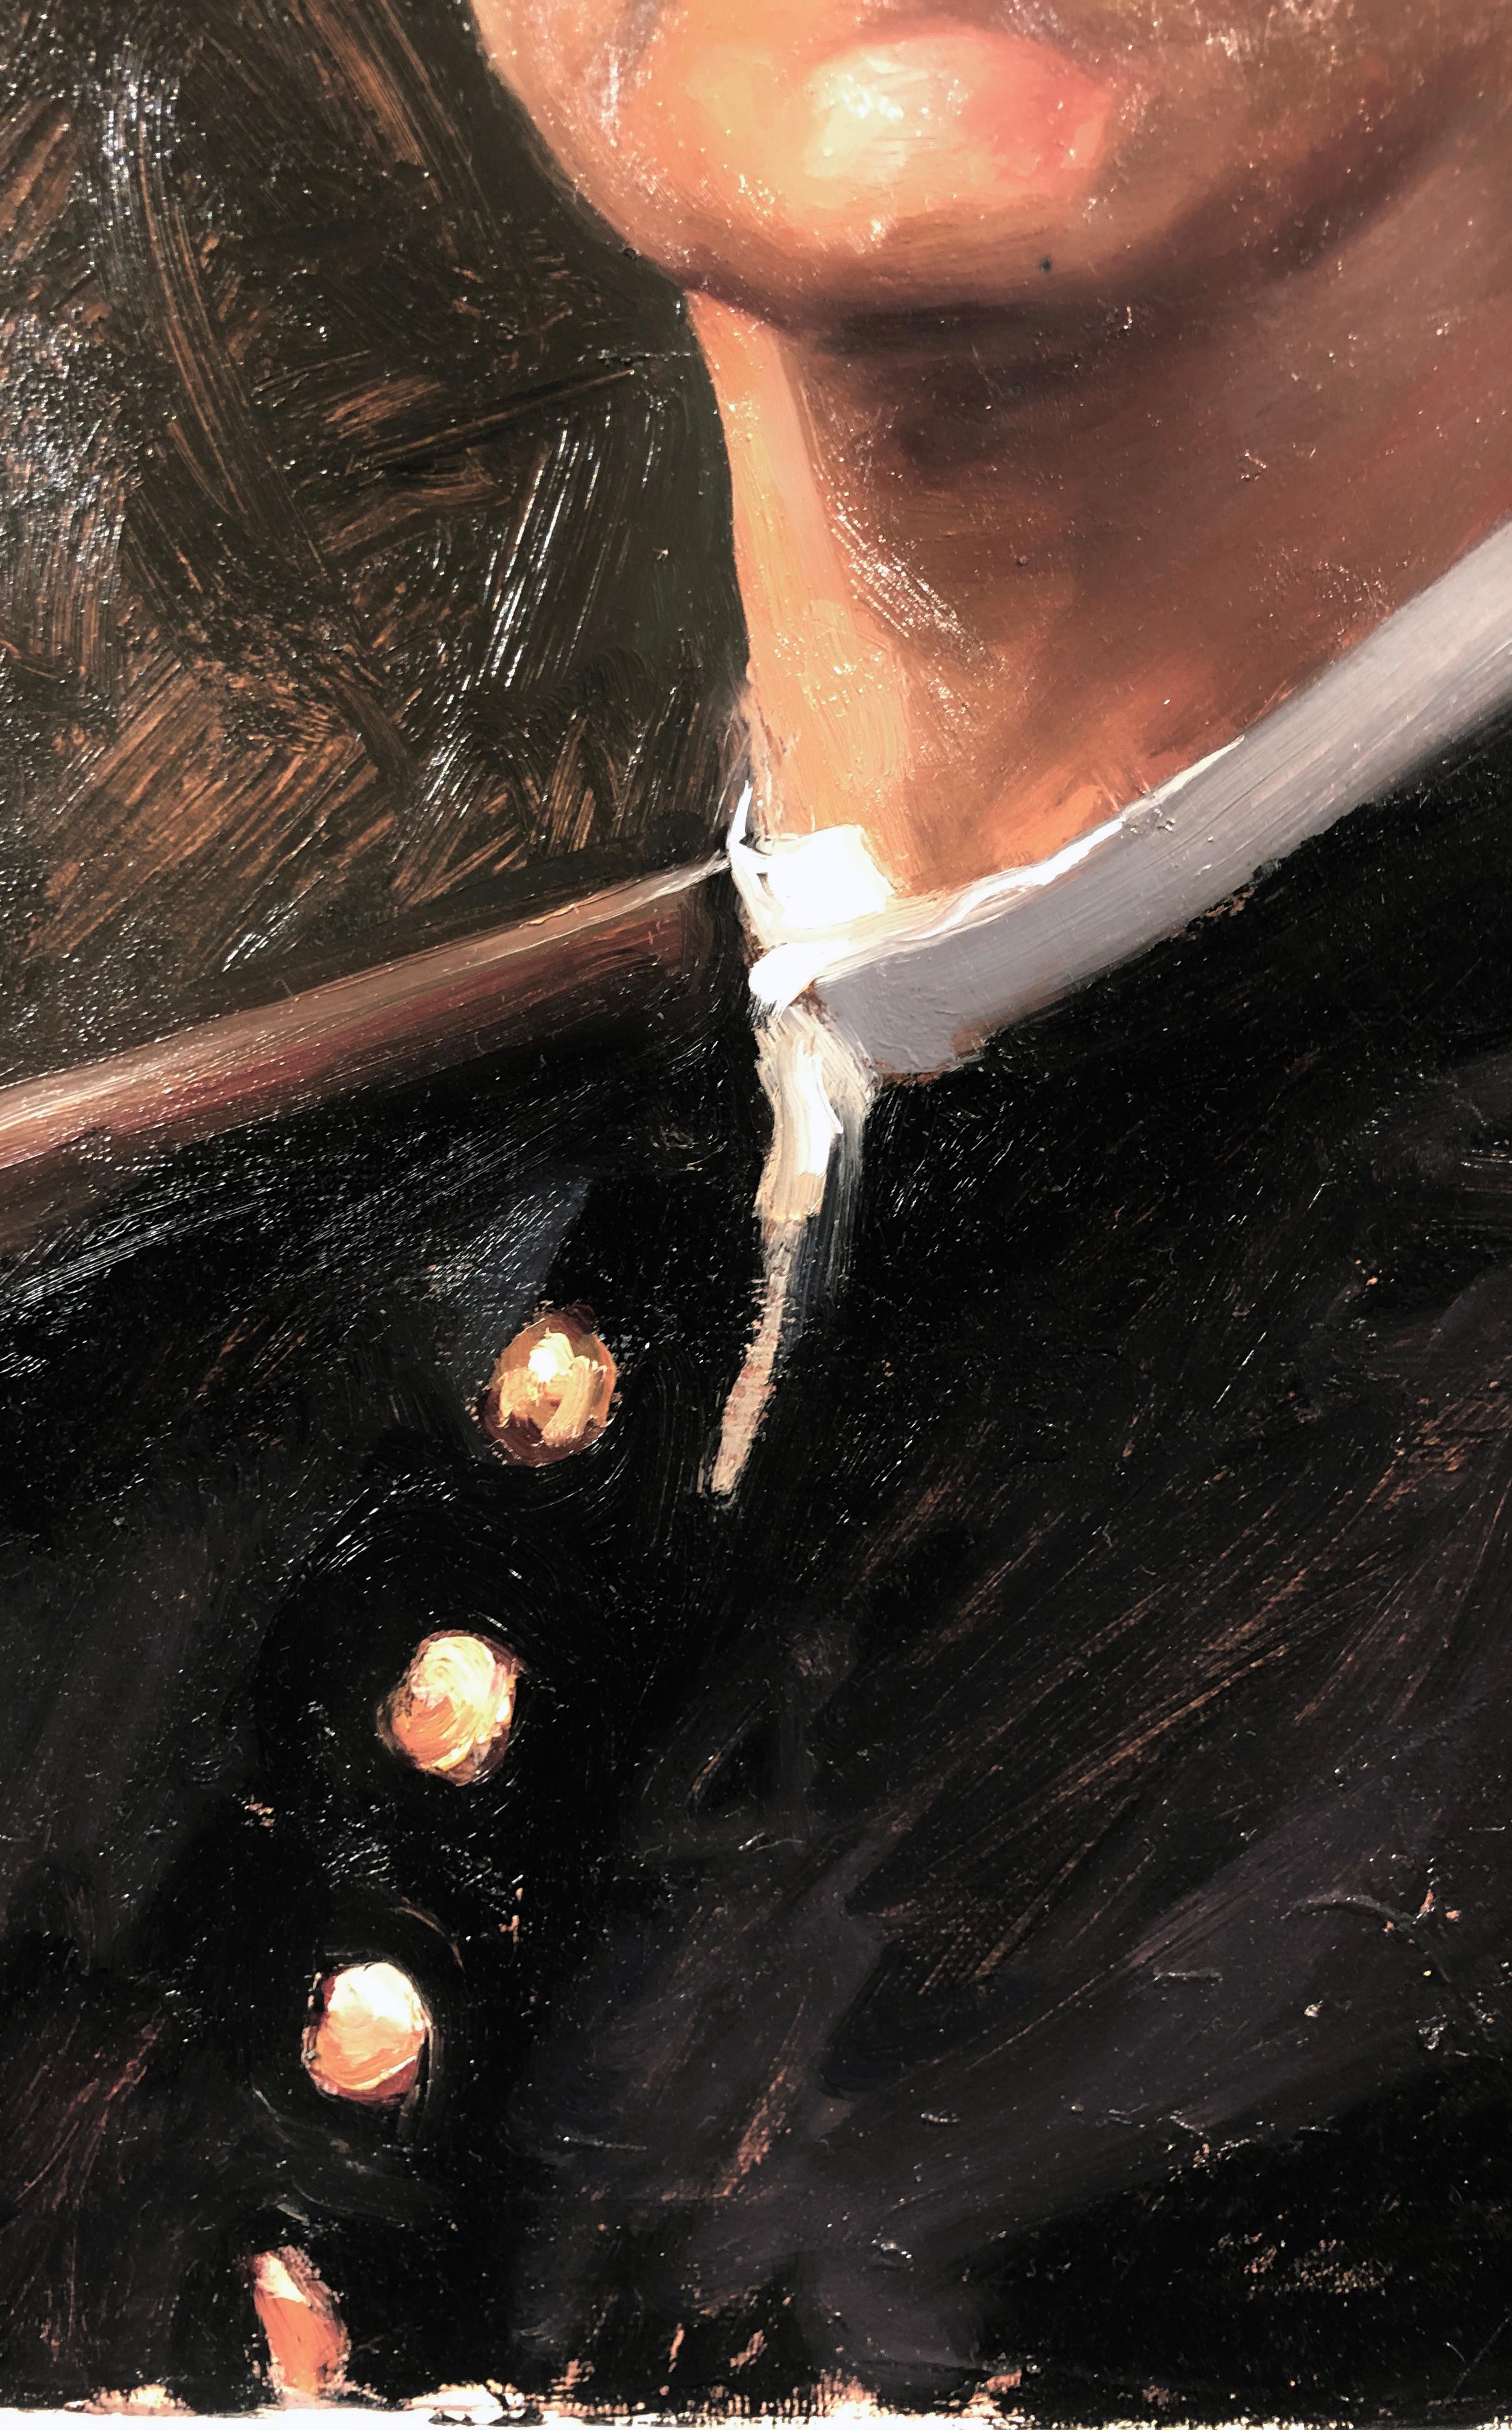 Croquet et la guerre de Sécession américaine, huile sur lin d'inspiration Winslow Homer - Contemporain Painting par William Blake (b. 1991) 